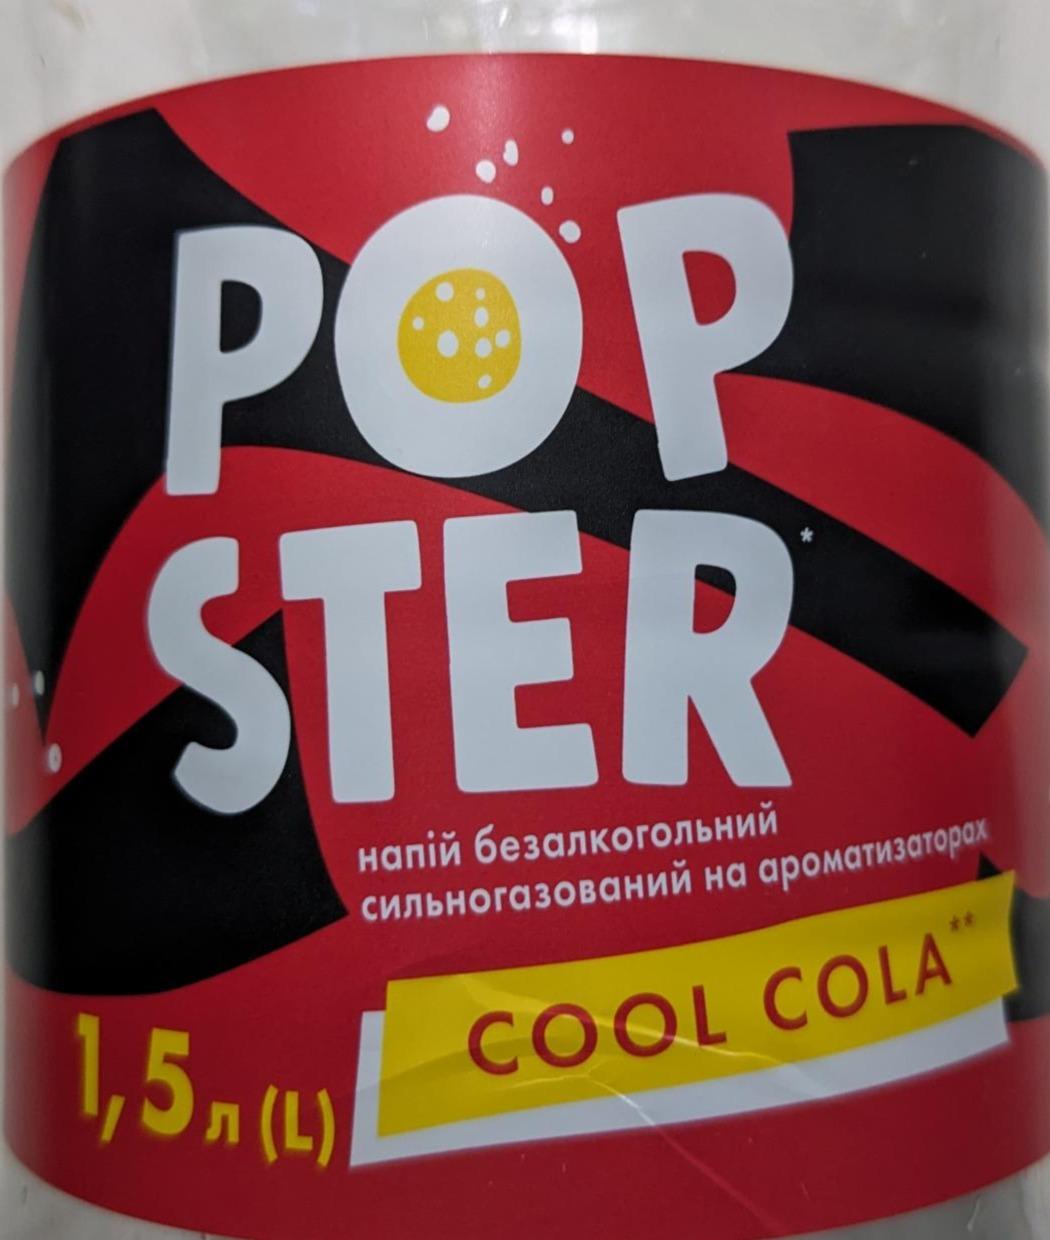 Фото - Напій безалкогольний сильногазований на ароматизаторах Cool cola Popster